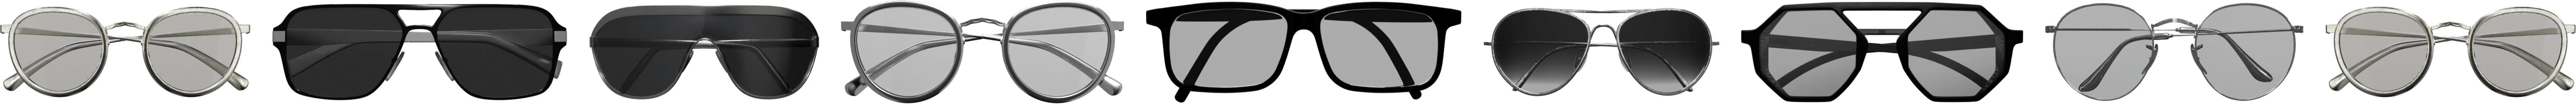 Eyeshaker la soluzione per la pulizia profonda degli occhiali